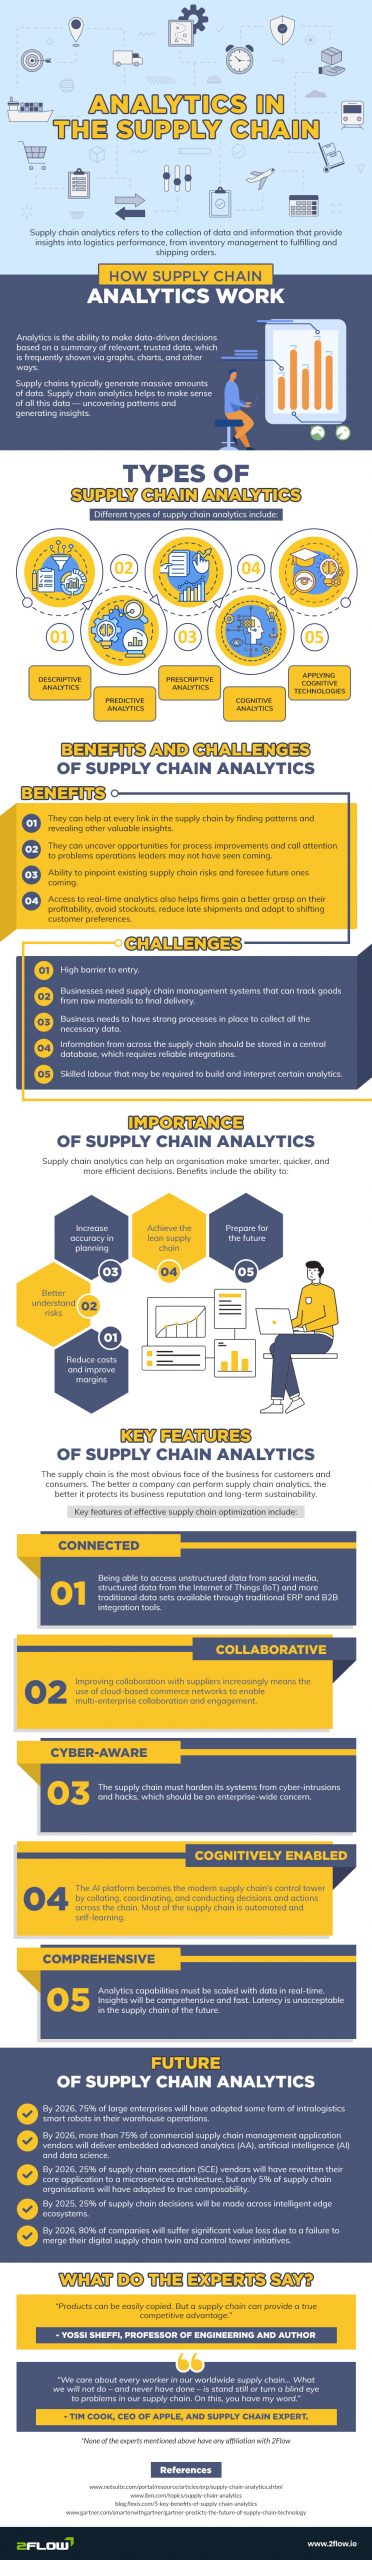 Supply Chain Analytics infographic